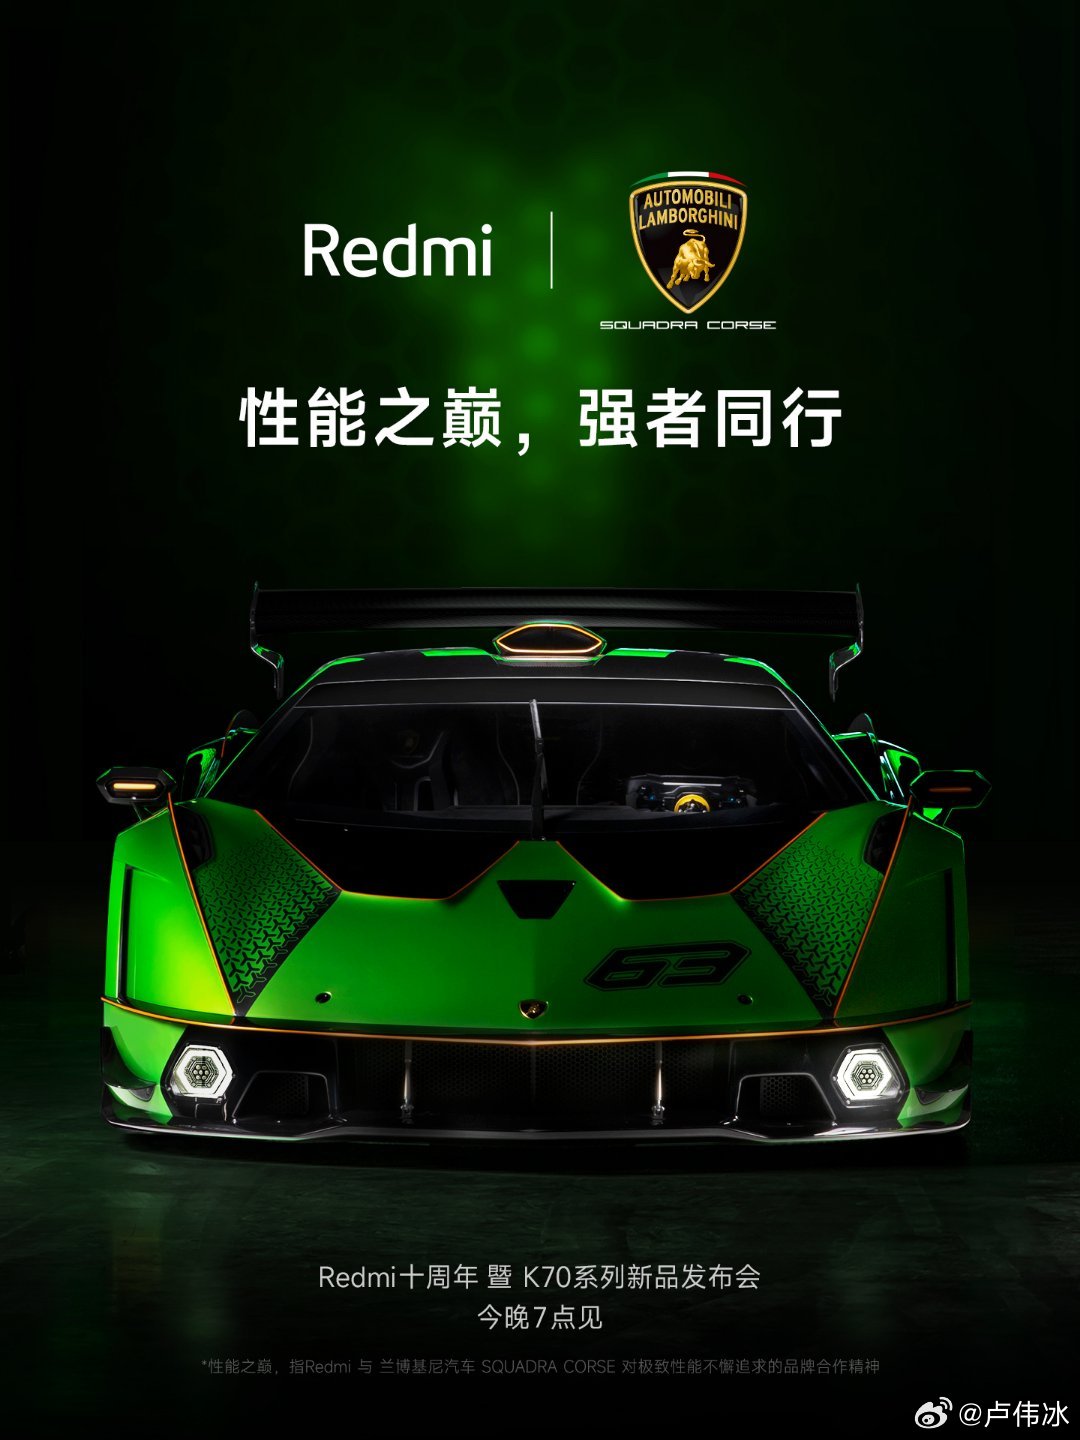 Redmi Lamborghini promo image